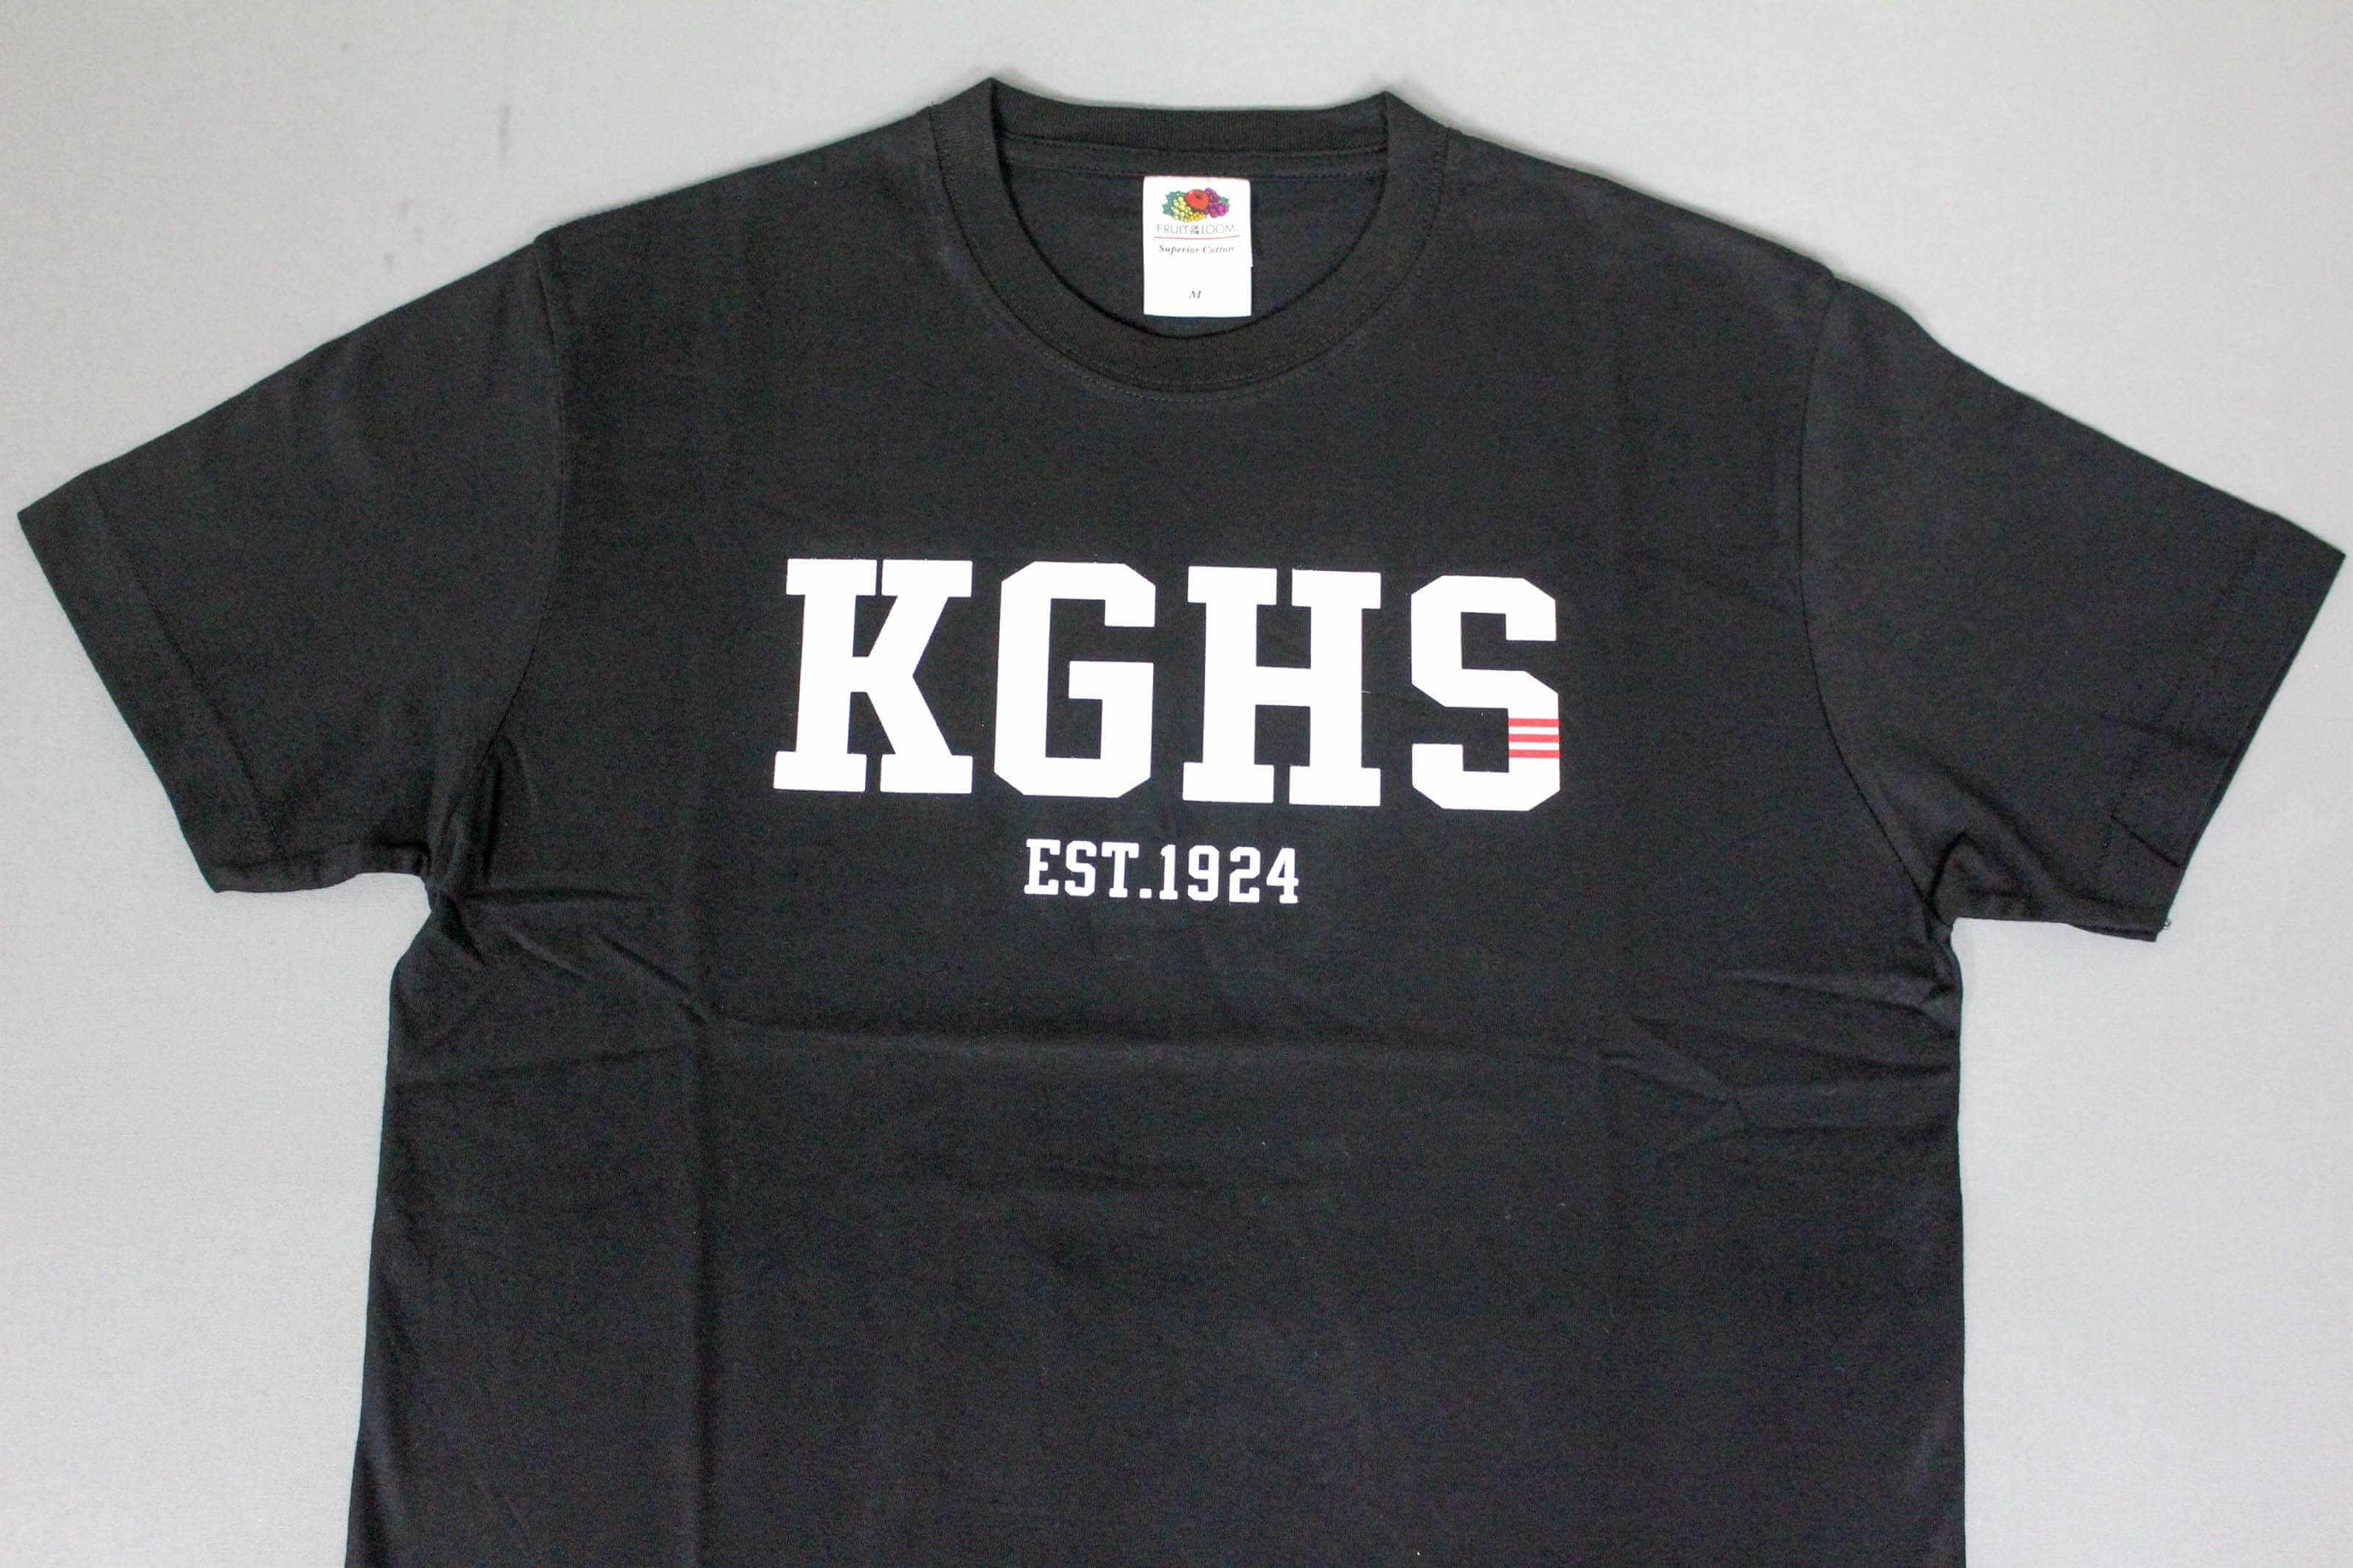 客製化T恤- KGHS 客製化T恤的第1張圖(客製化公司制服、班服製作、團體服製作等示意或作品圖)